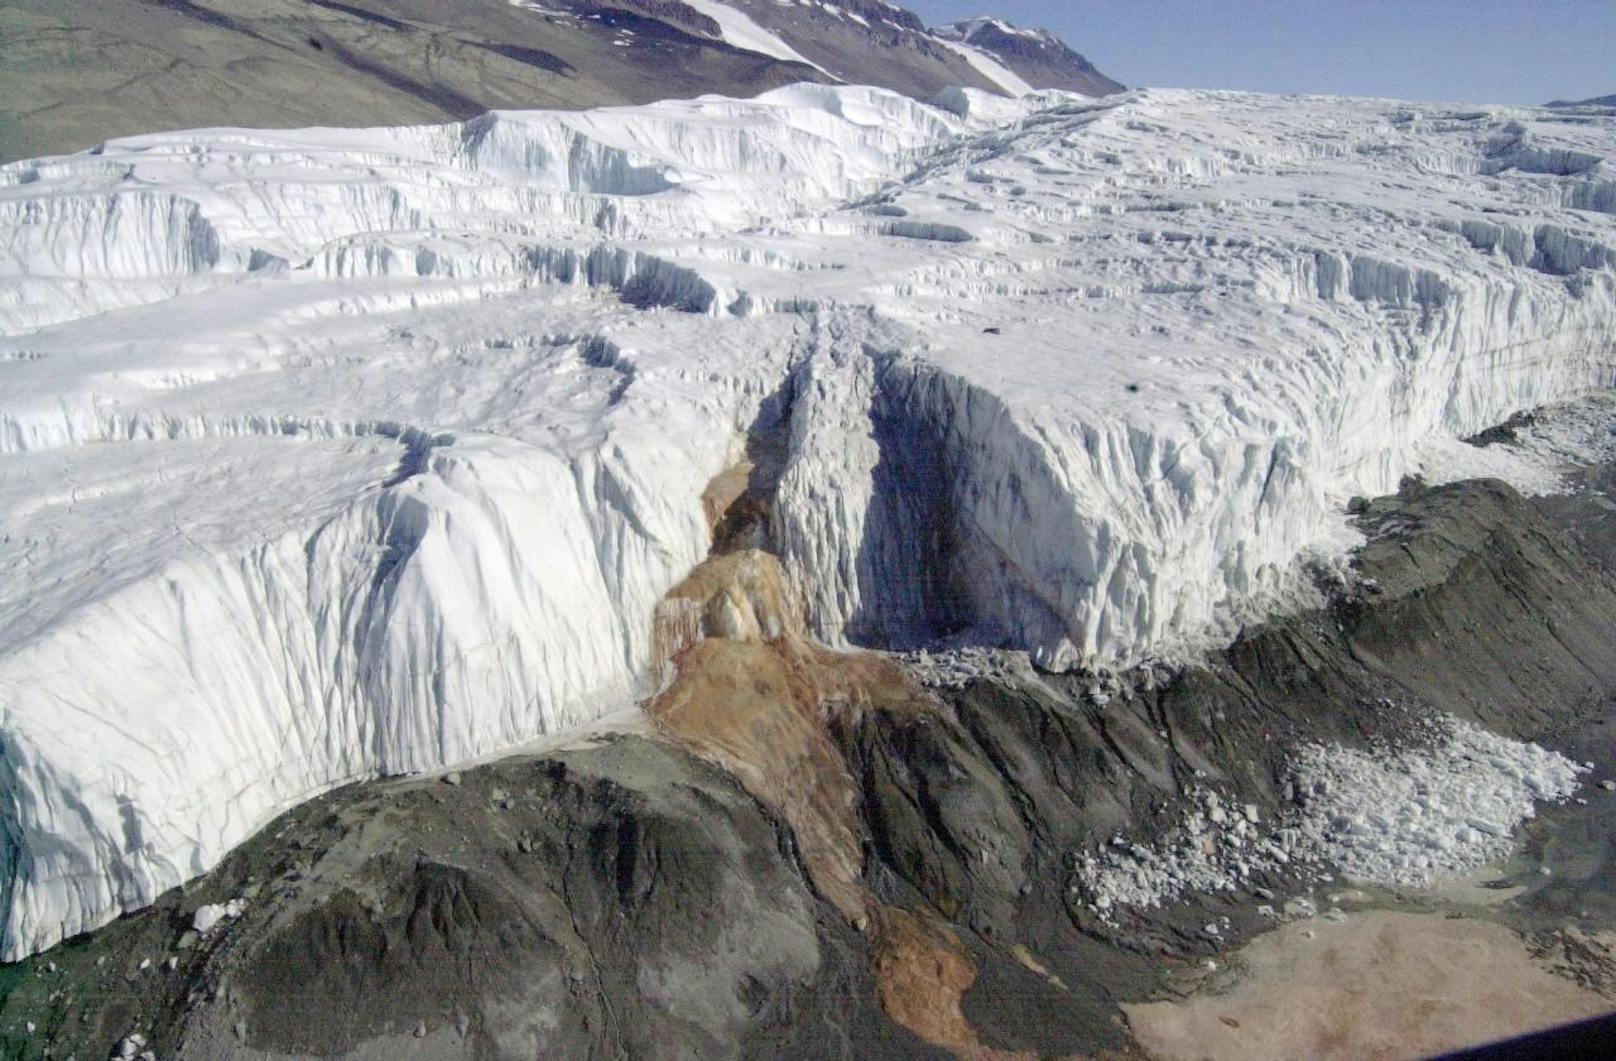 ... dass vom Gletscher Wärme ausgeht: "Wasser gibt Wärme ab, wenn es gefriert - und das könnte das Eis um die Kanäle herum erwärmen", so die Forscher im "Journal of Glaciology".